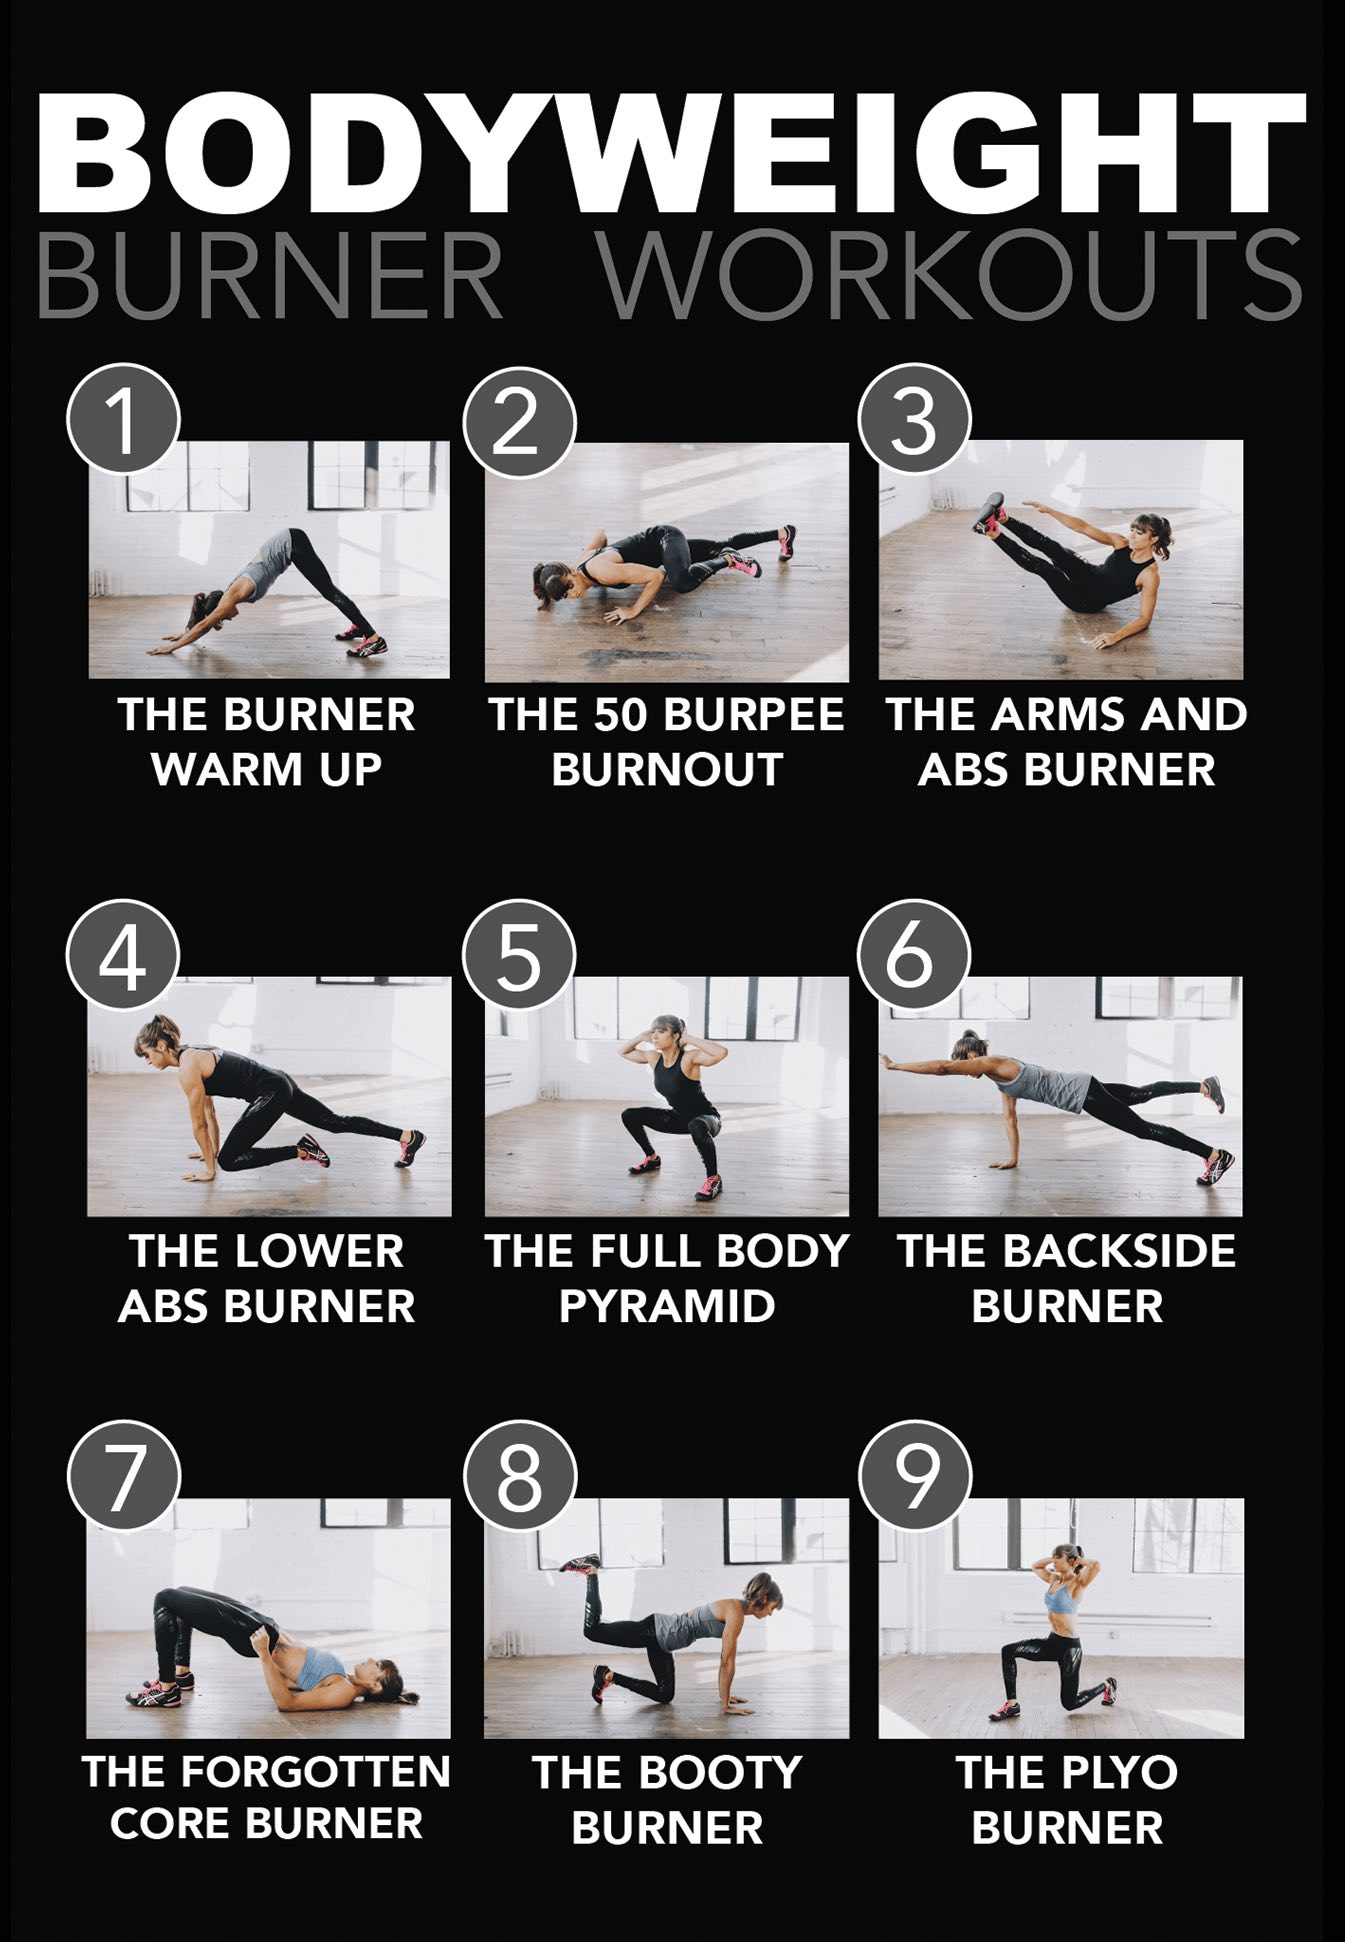 Get Your 5-Minute Burner Workout DVD!